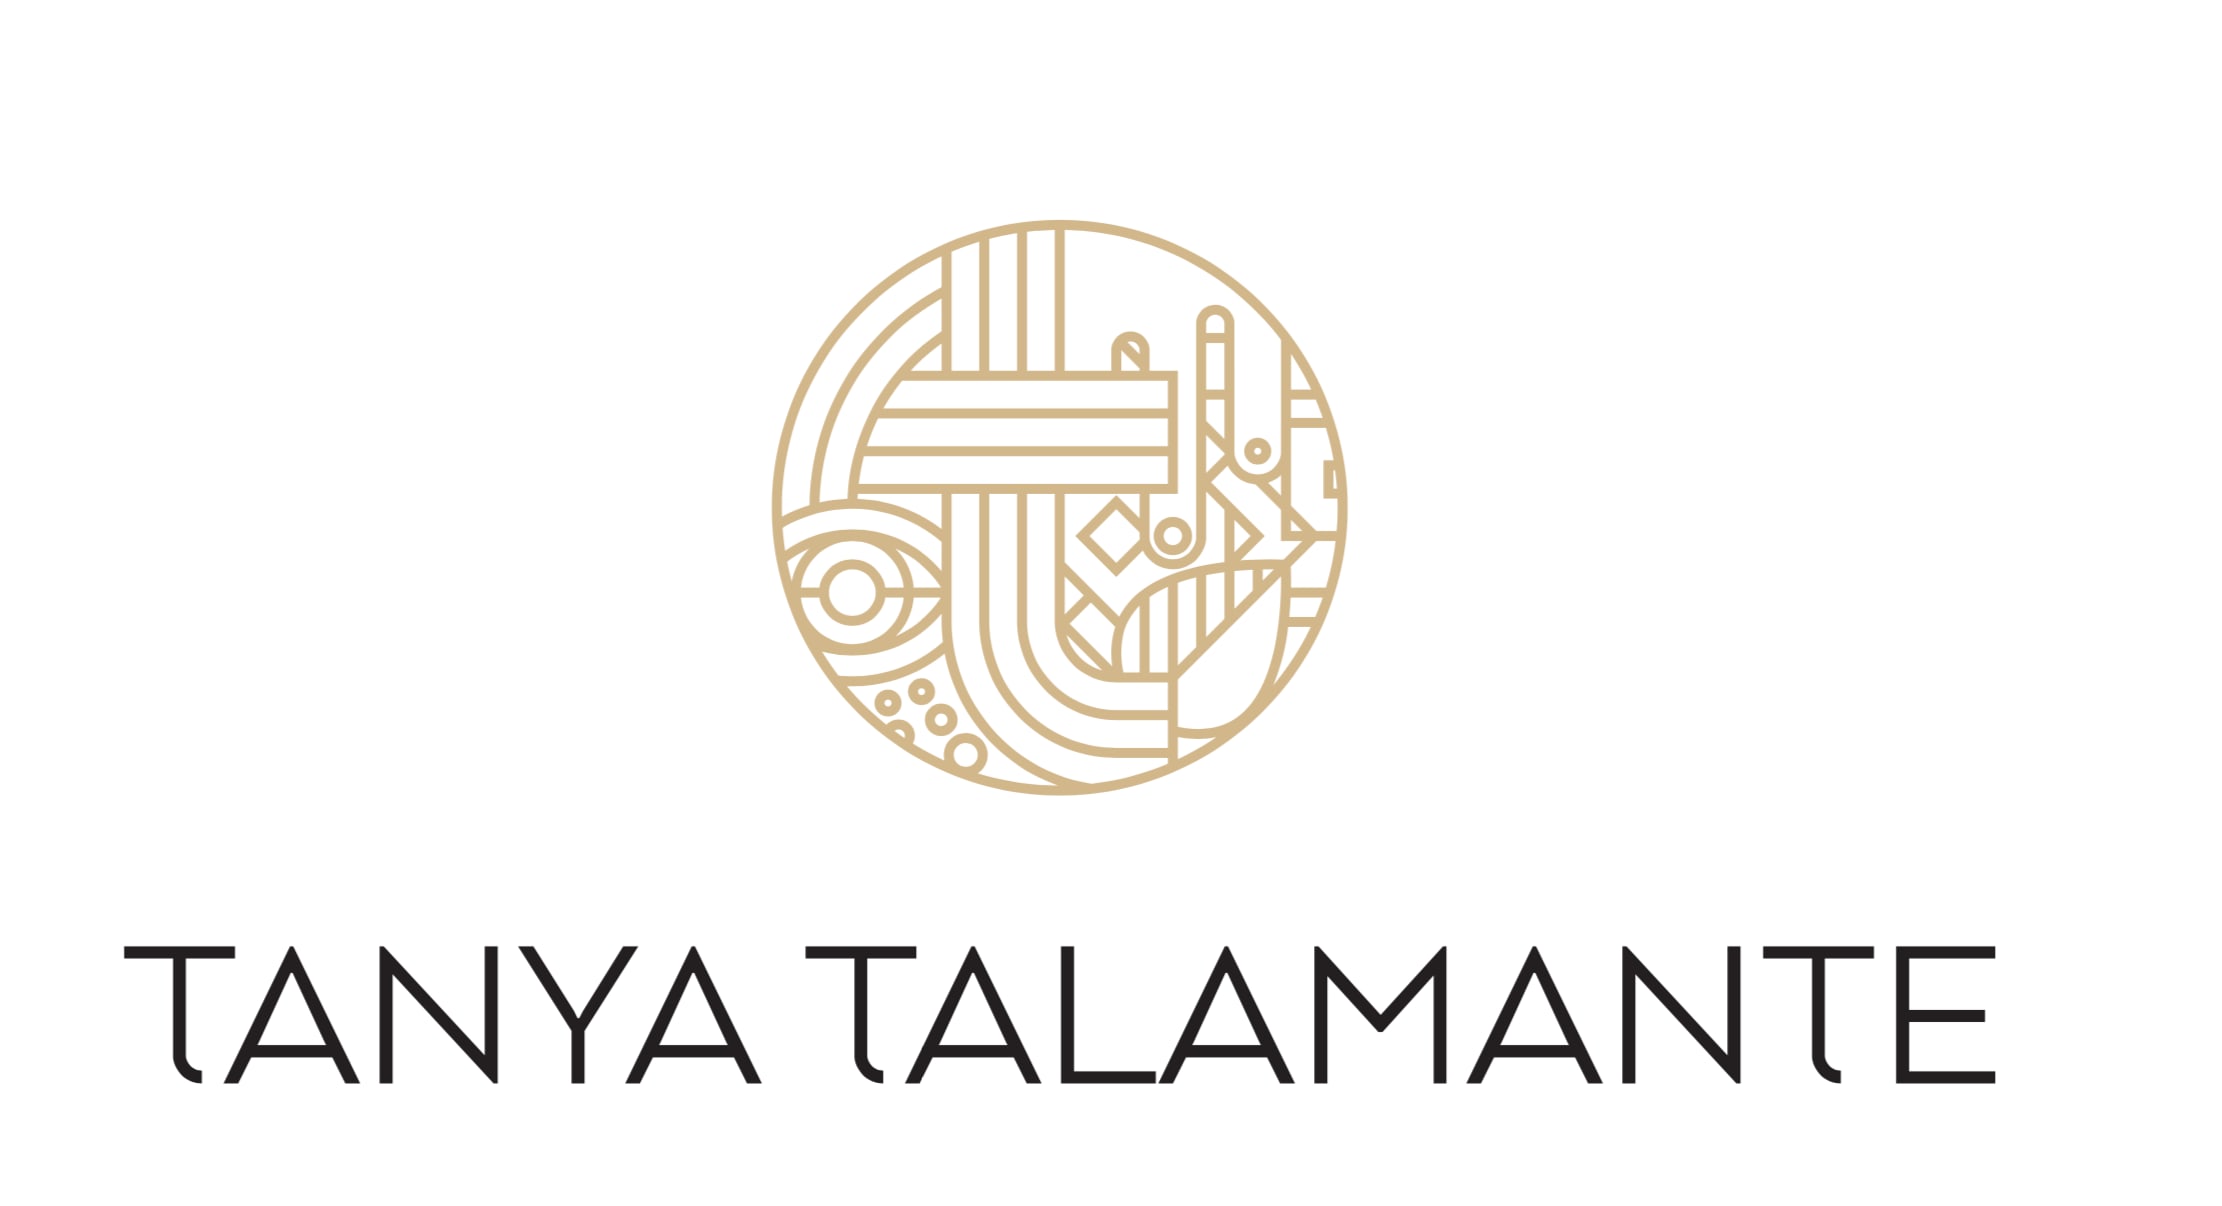 About Tanya Talamante